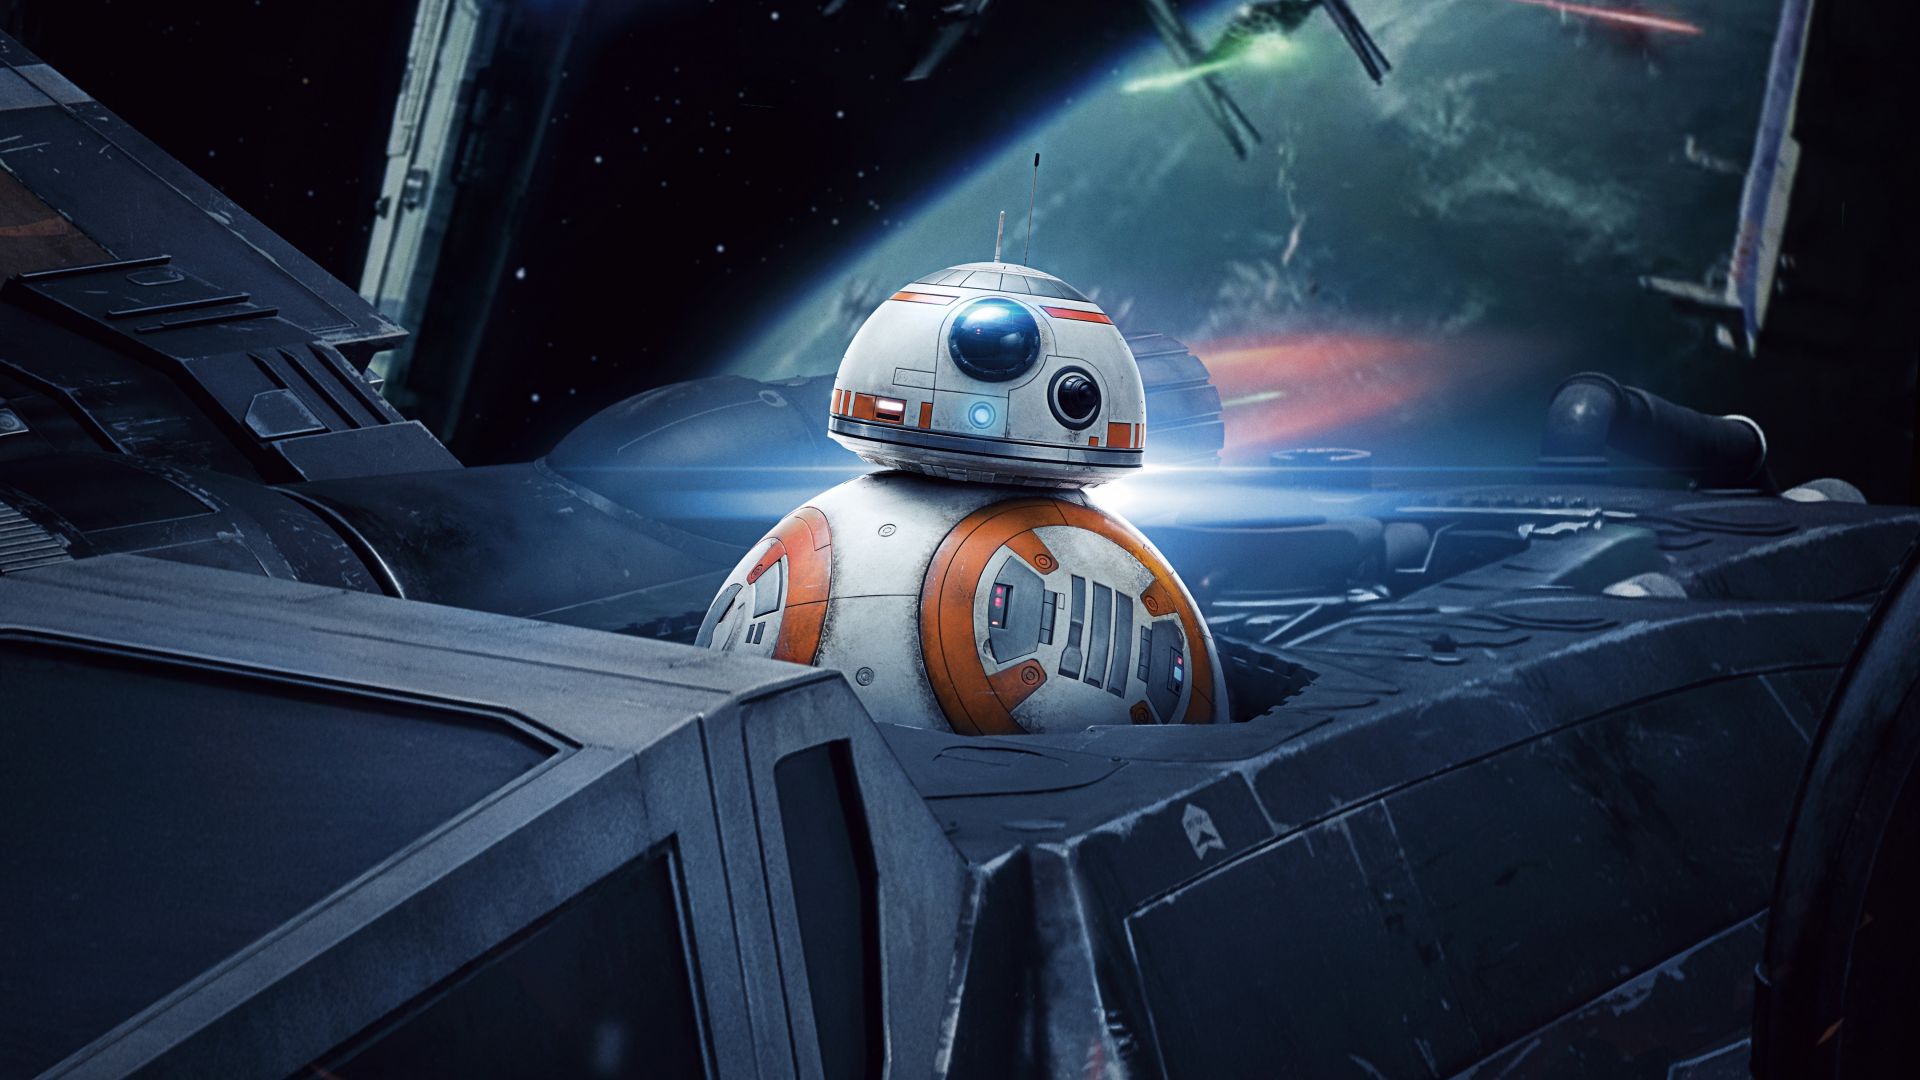 Wallpaper R2-D2, robot, 201 movie, star wars: the last jedi, 5k